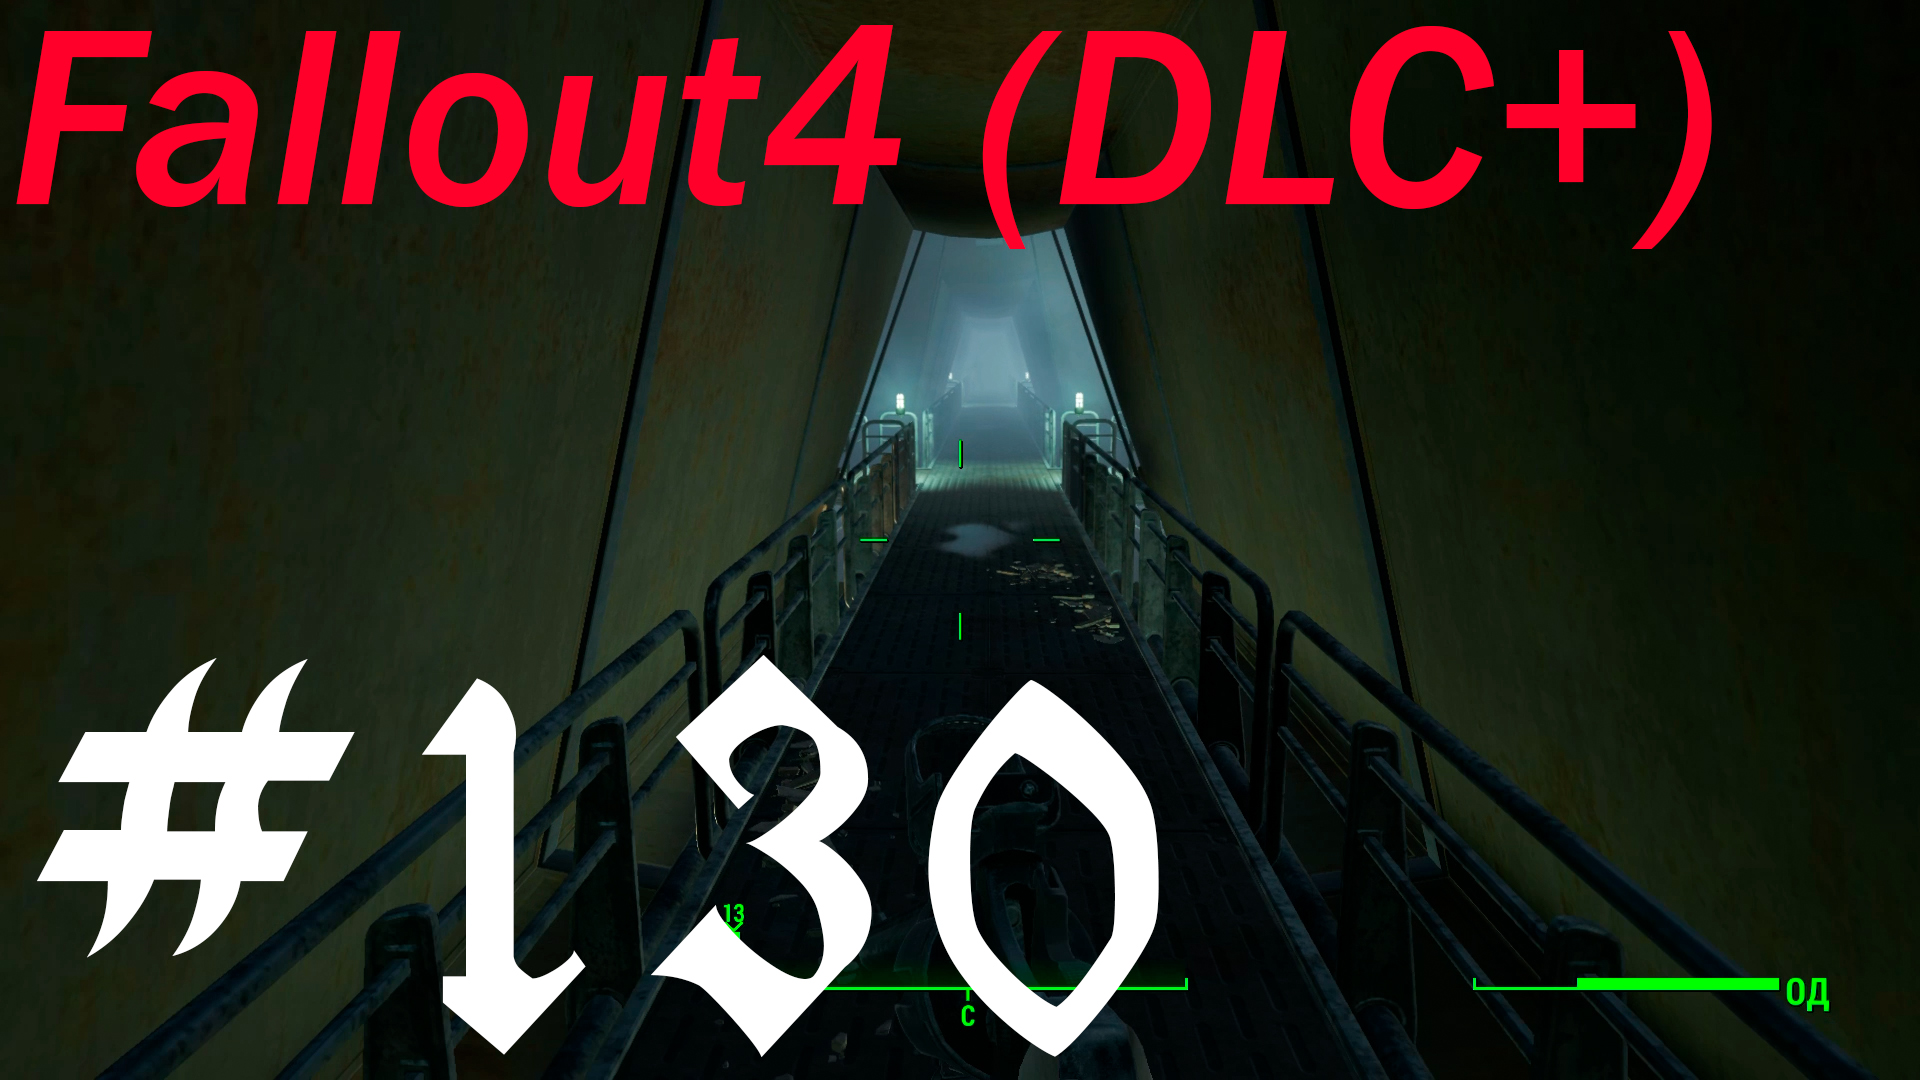 Fallout 4 + DLC, прохождение , сложность обычная качество пойдет запись ФХД ,часть 130